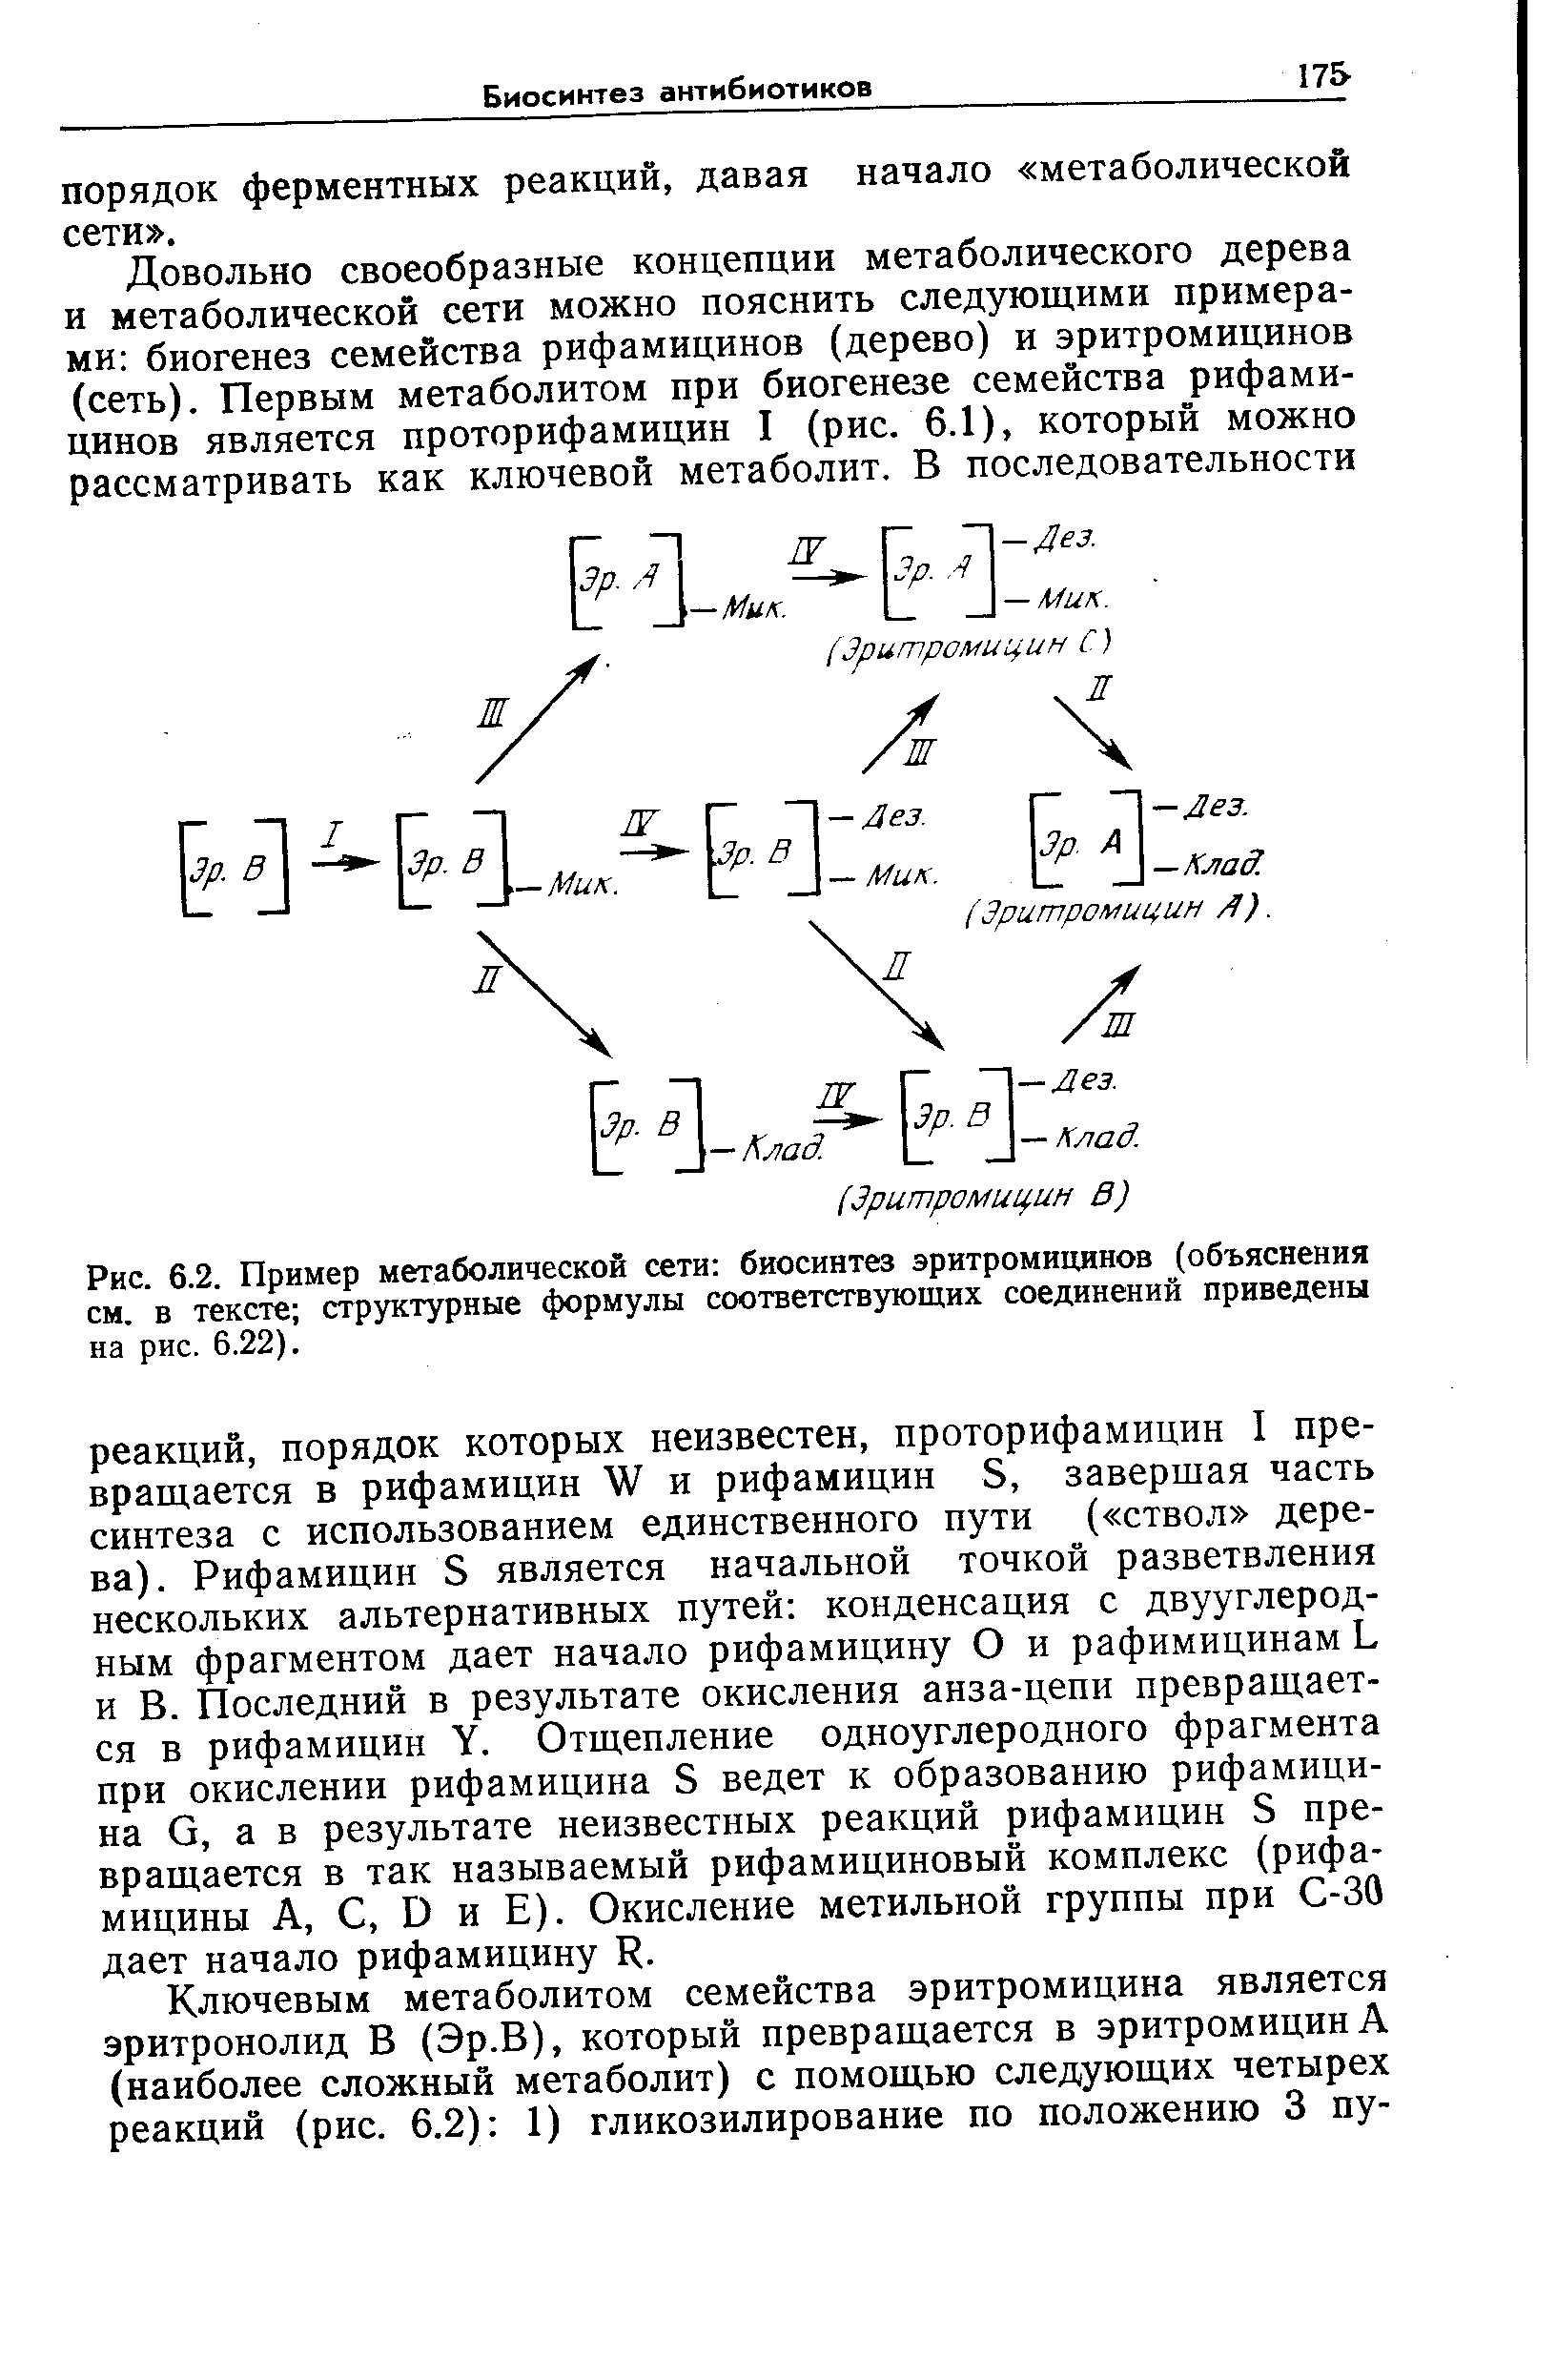 Рис. 6.2. Пример метаболической сети биосинтез эритромицинов (объяснения см. в тексте структурные формулы соответствующих соединений приведены на рис. 6.22).